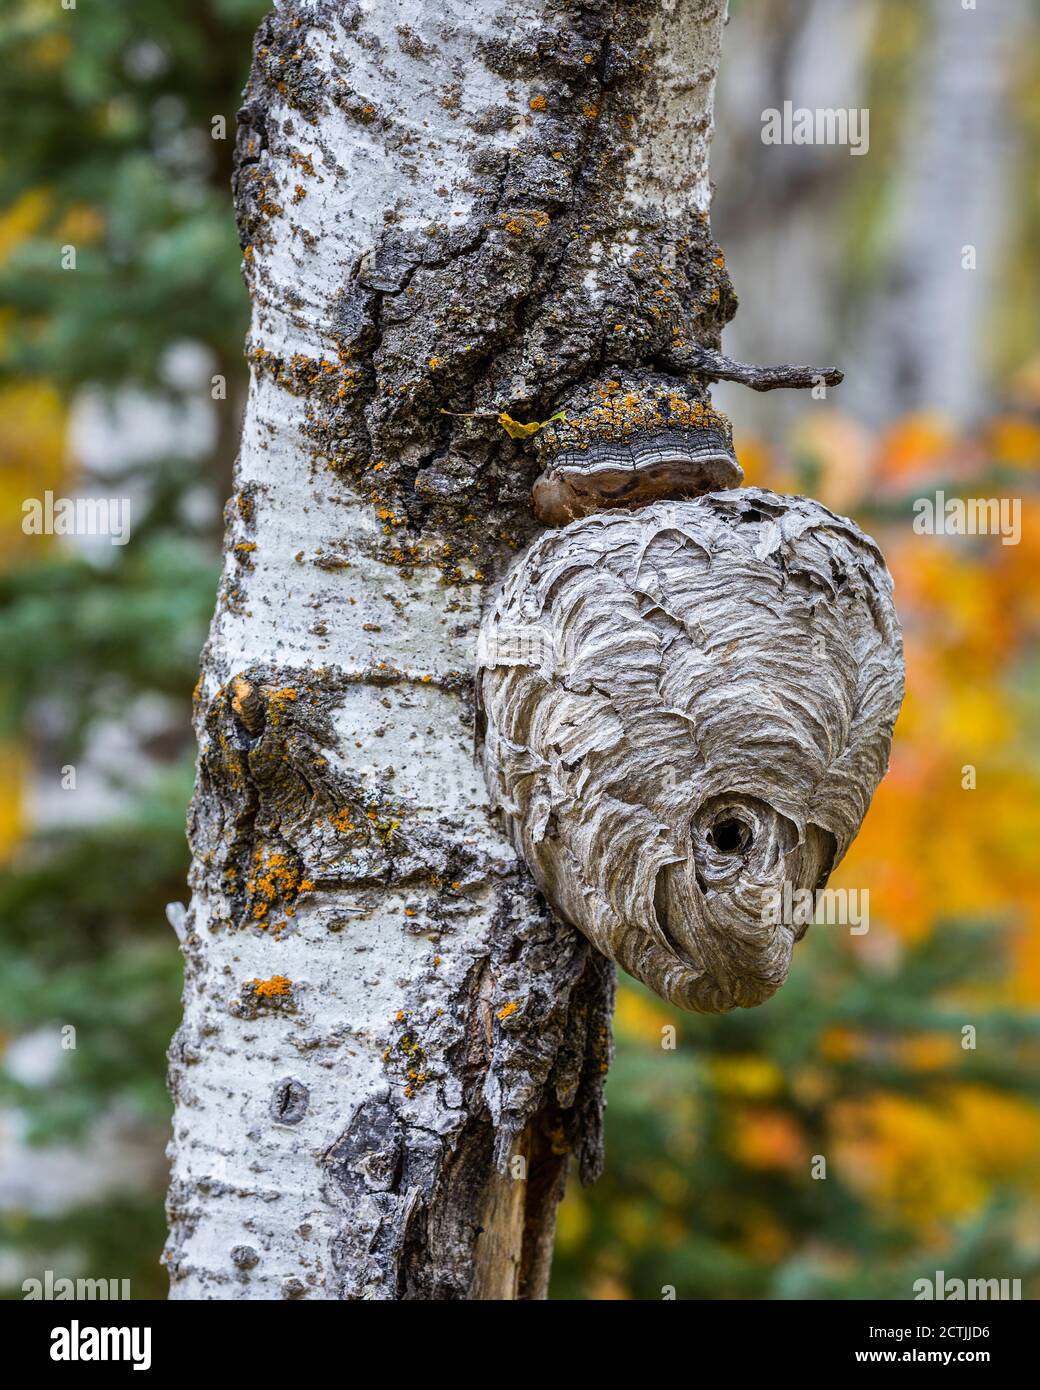 Nido de avispa en tronco de árbol, Manitoba, Canadá. Foto de stock